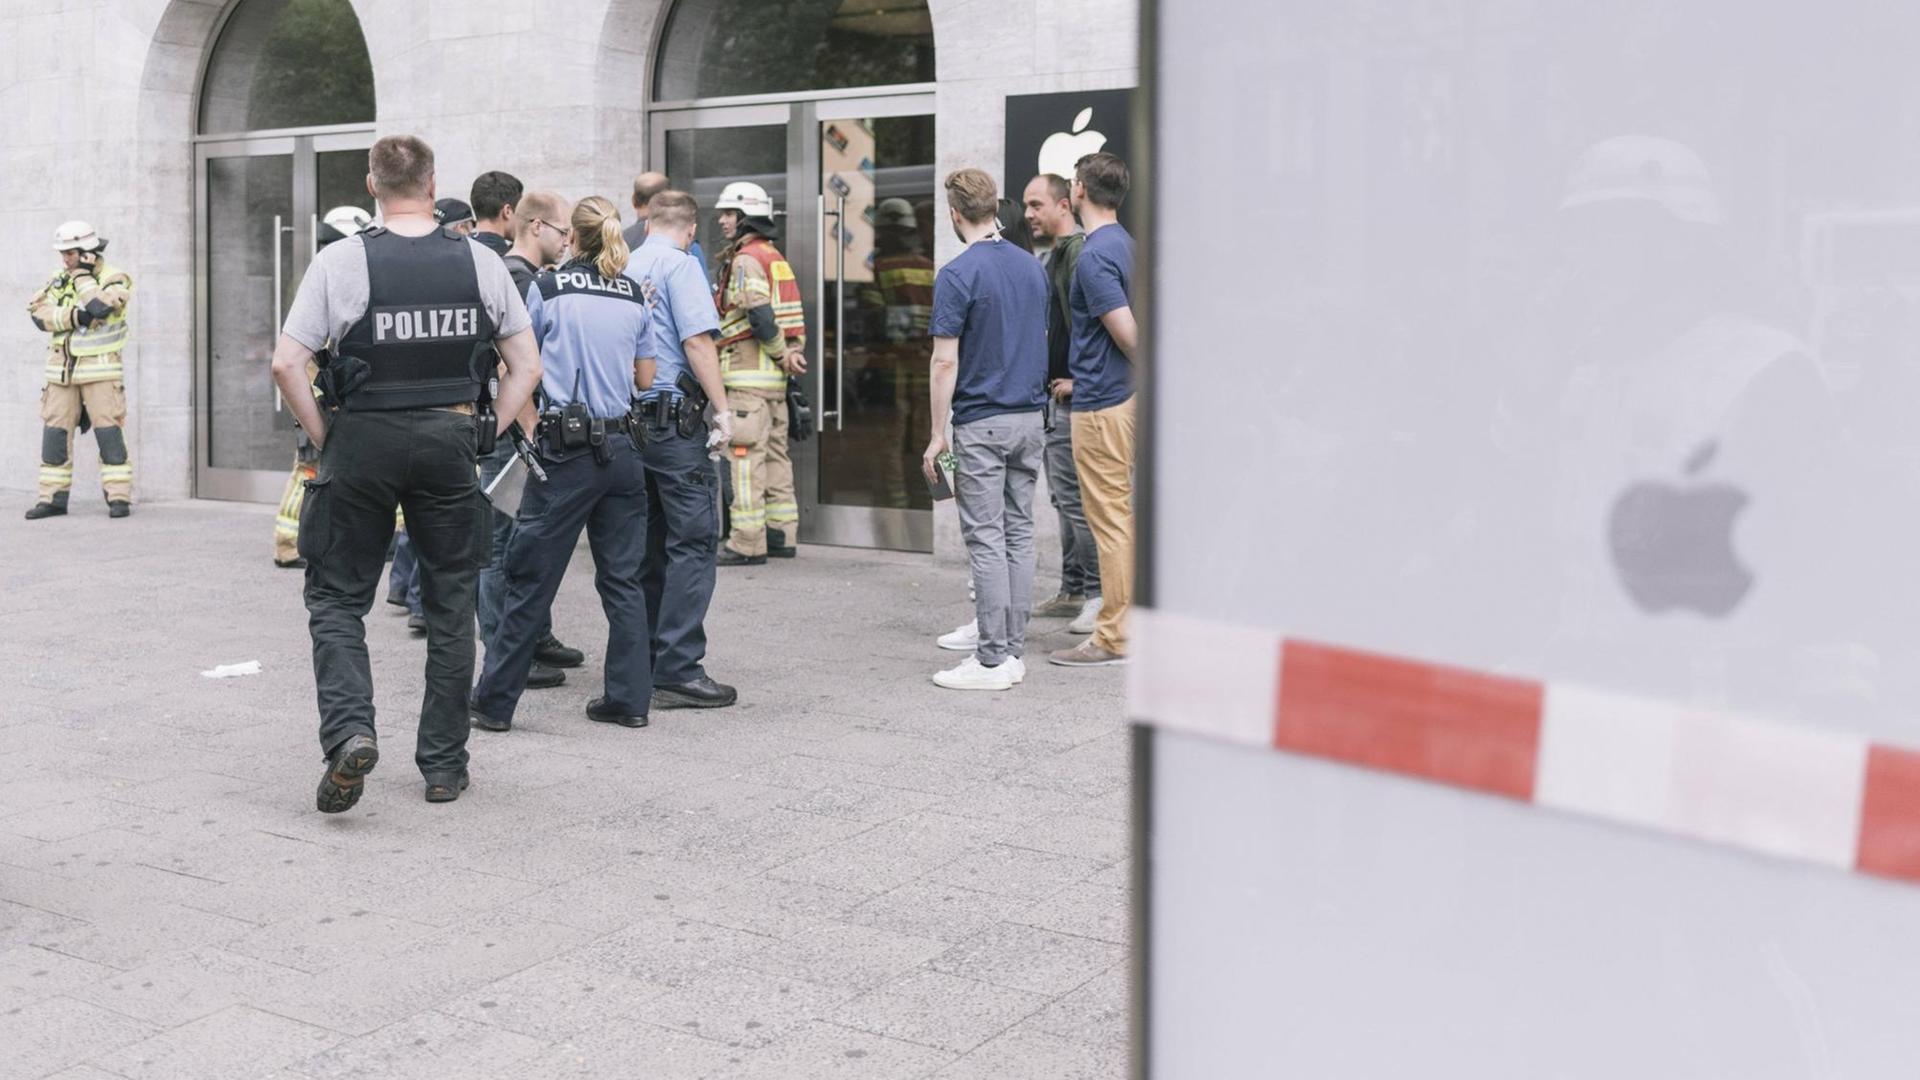 Polizei und Katastrophenschutz vor dem Apple Store am Berliner Kurfürstendamm. Am 9. Juli 2016 hatten Künstler falsches Quecksilber in dem Geschäft verschüttet und so die Kunden verschreckt. Vielen hielten die Aktion für einen Terroranschlag.